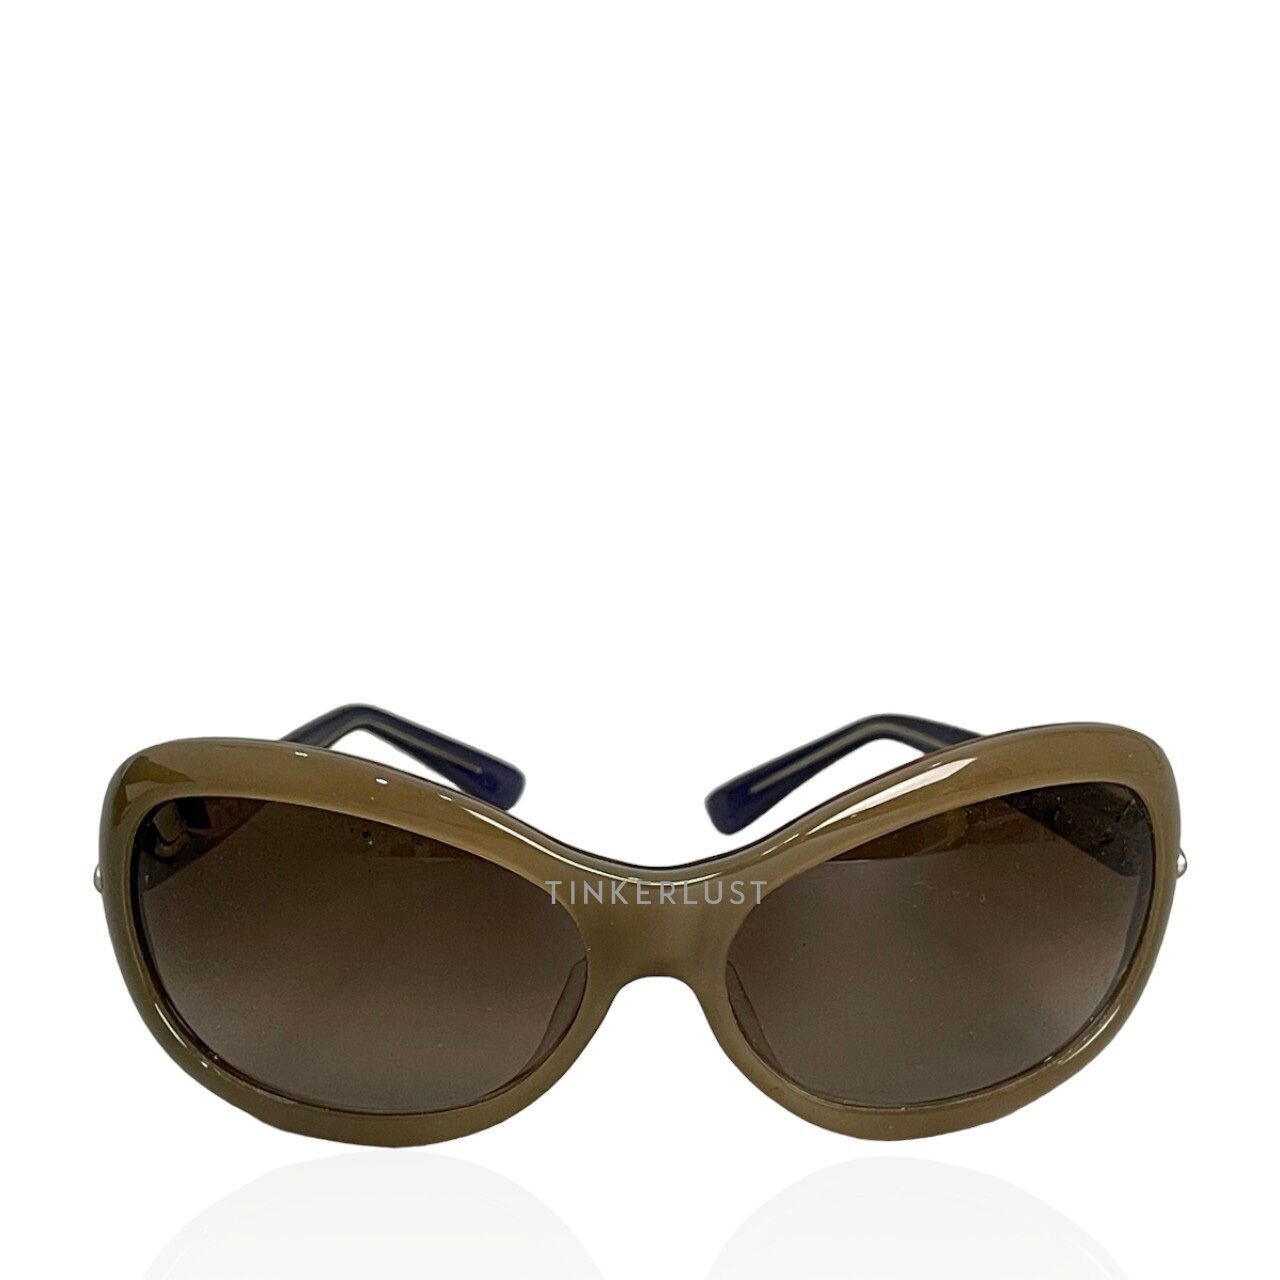 Marni Brown & Blue Sunglasses